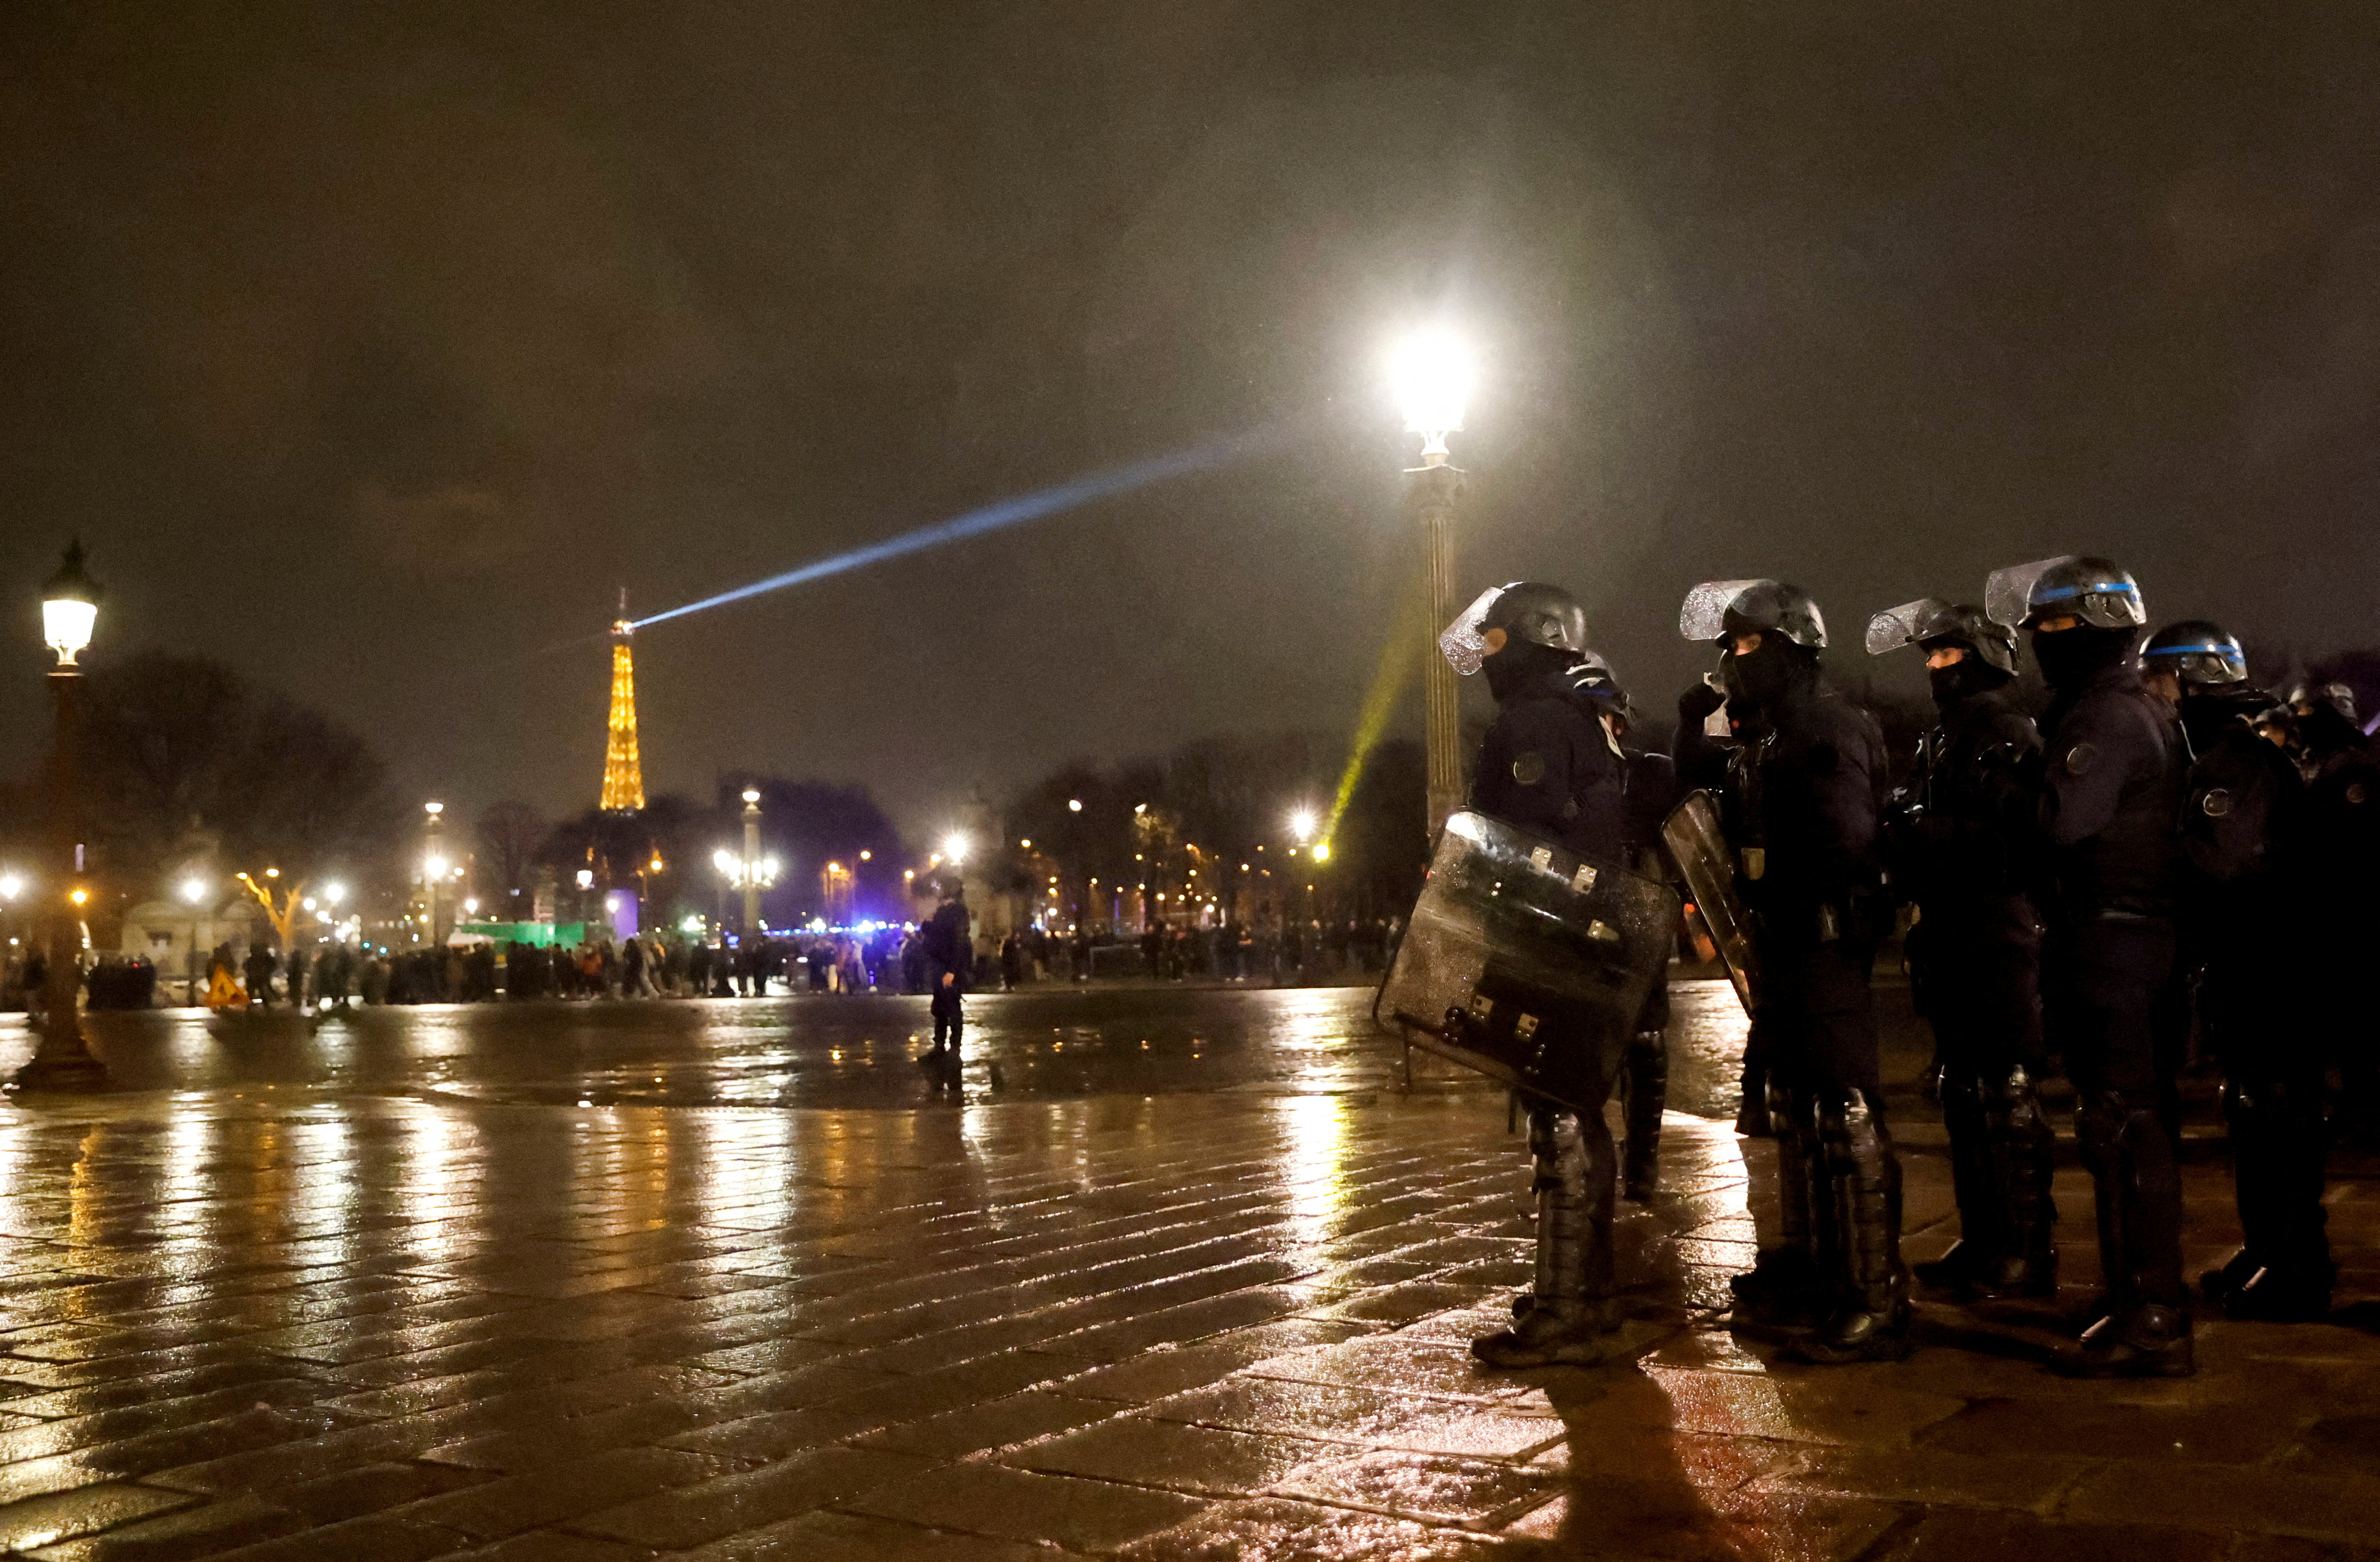 Si bien París ha resistido los embates de la ira que retumba en sus calles, cada noche la situación se vuelve más difícil, reconocen las autoridades